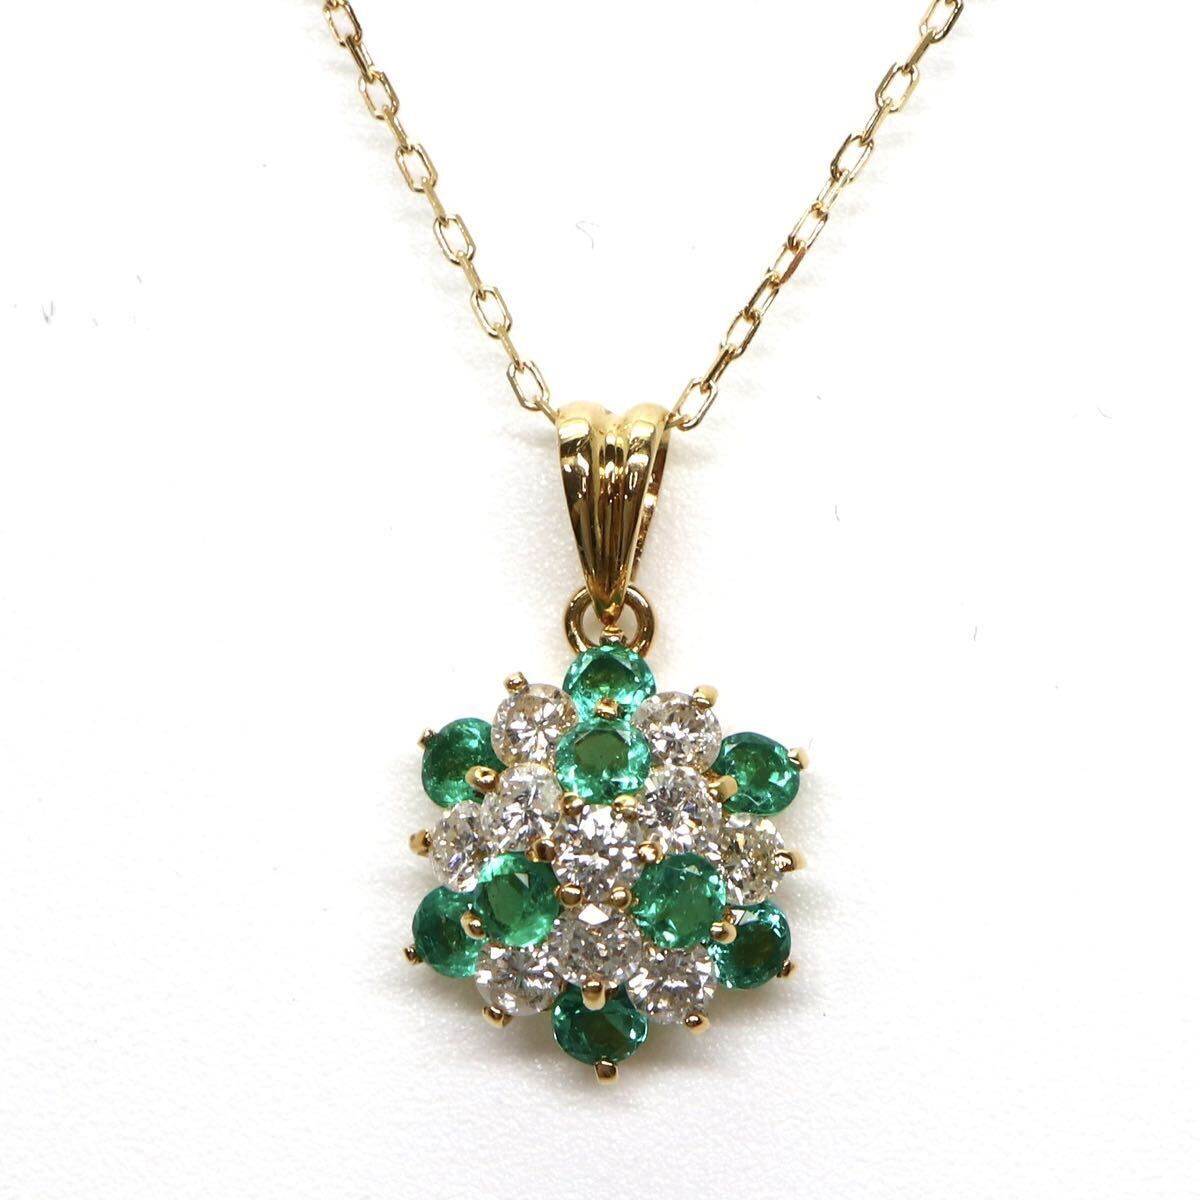 ソーティング付き!!◆K18 天然エメラルド/天然ダイヤモンドネックレス◆A 約2.5g 約40.5cm 0.50ct 0.53ct emerald necklace EA9/EA9